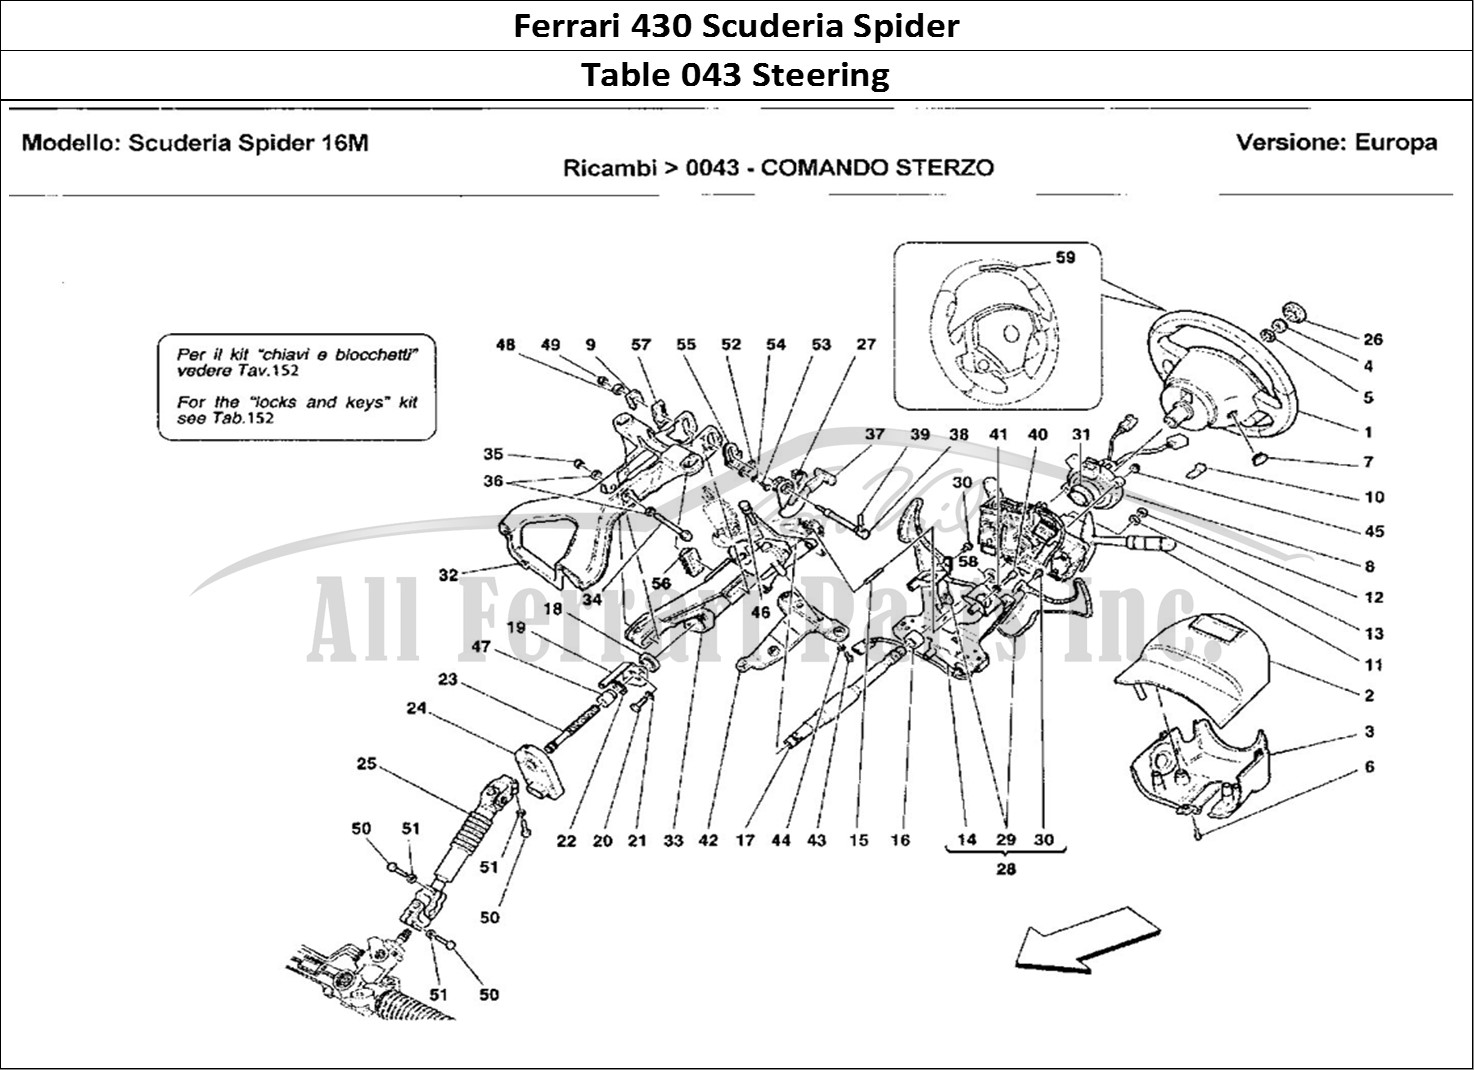 Ferrari Parts Ferrari 430 Scuderia Spider 16M Page 043 Comando Sterzo